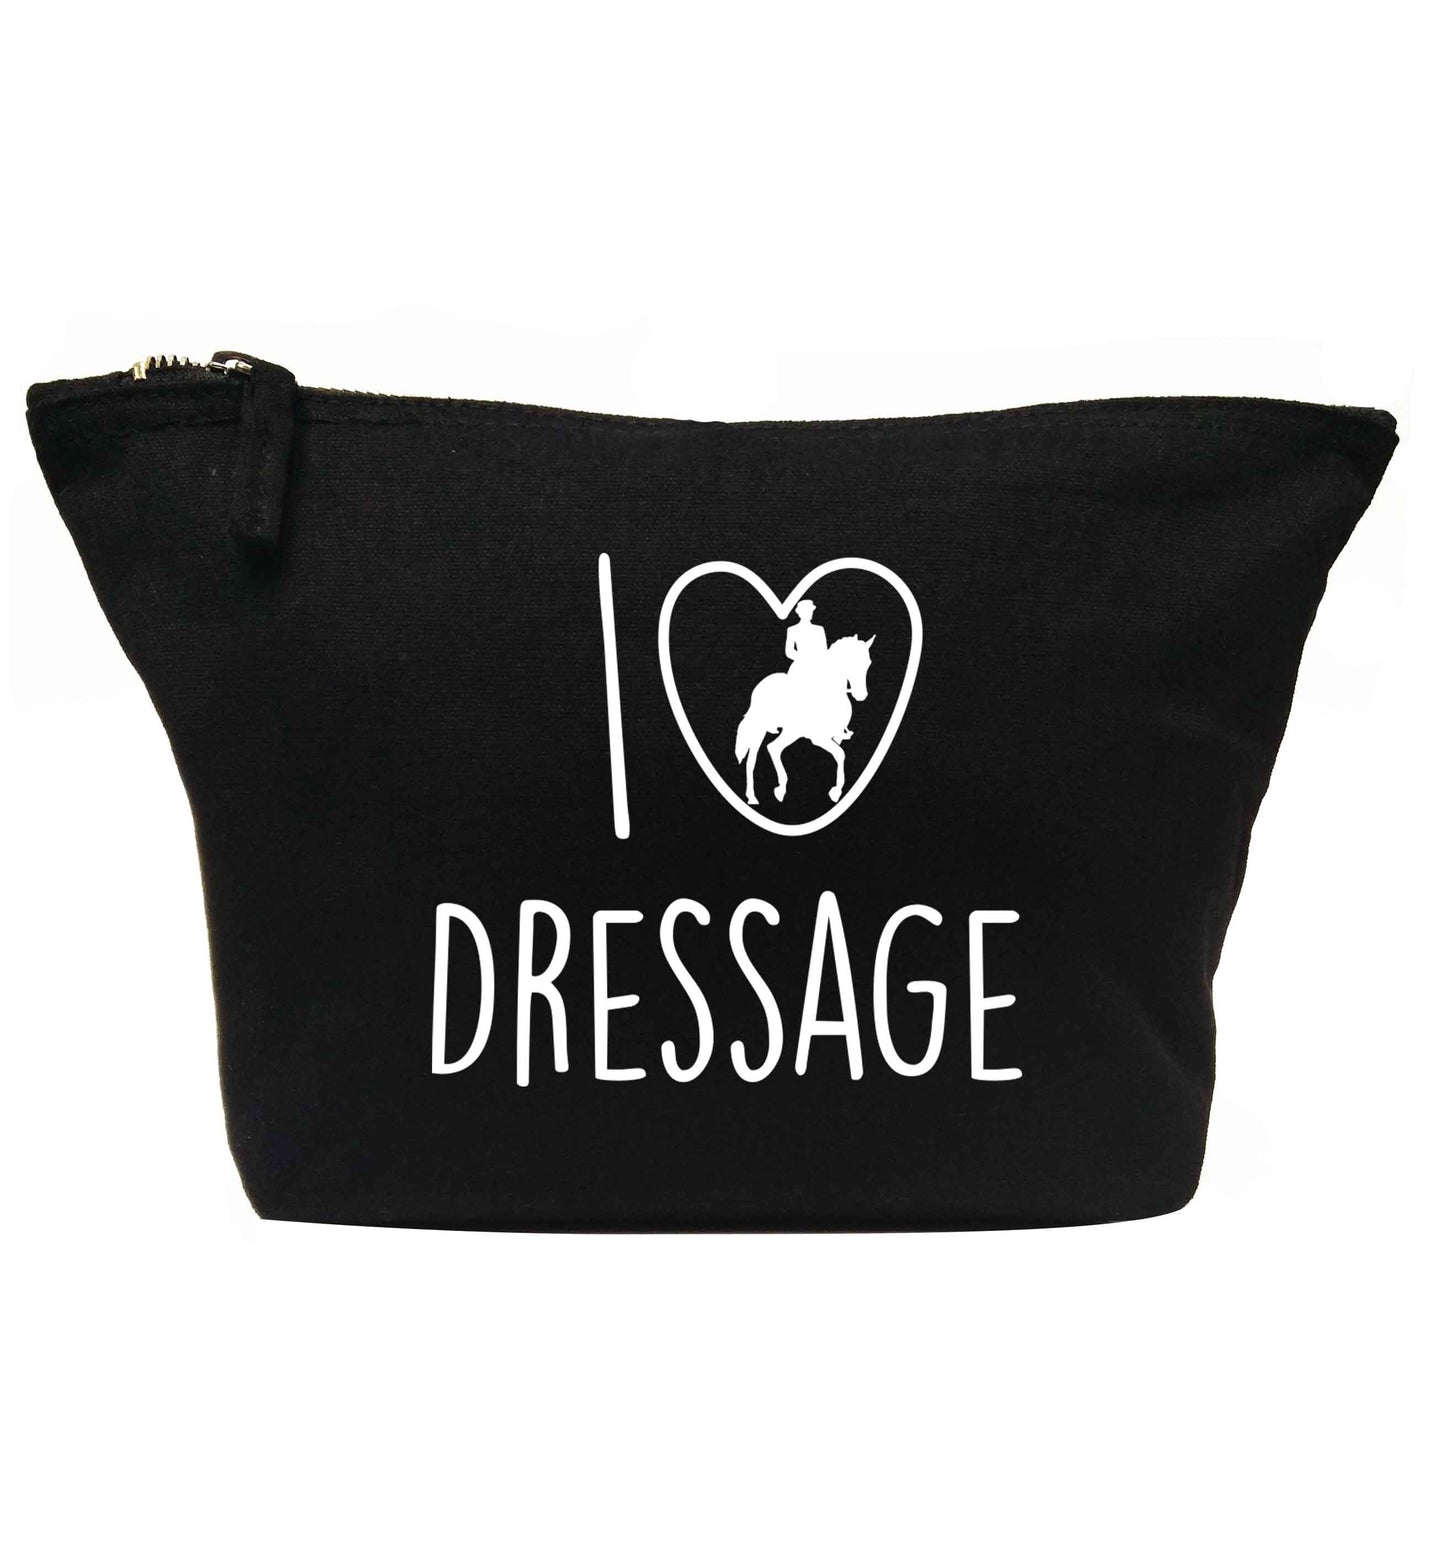 I love dressage | Makeup / wash bag